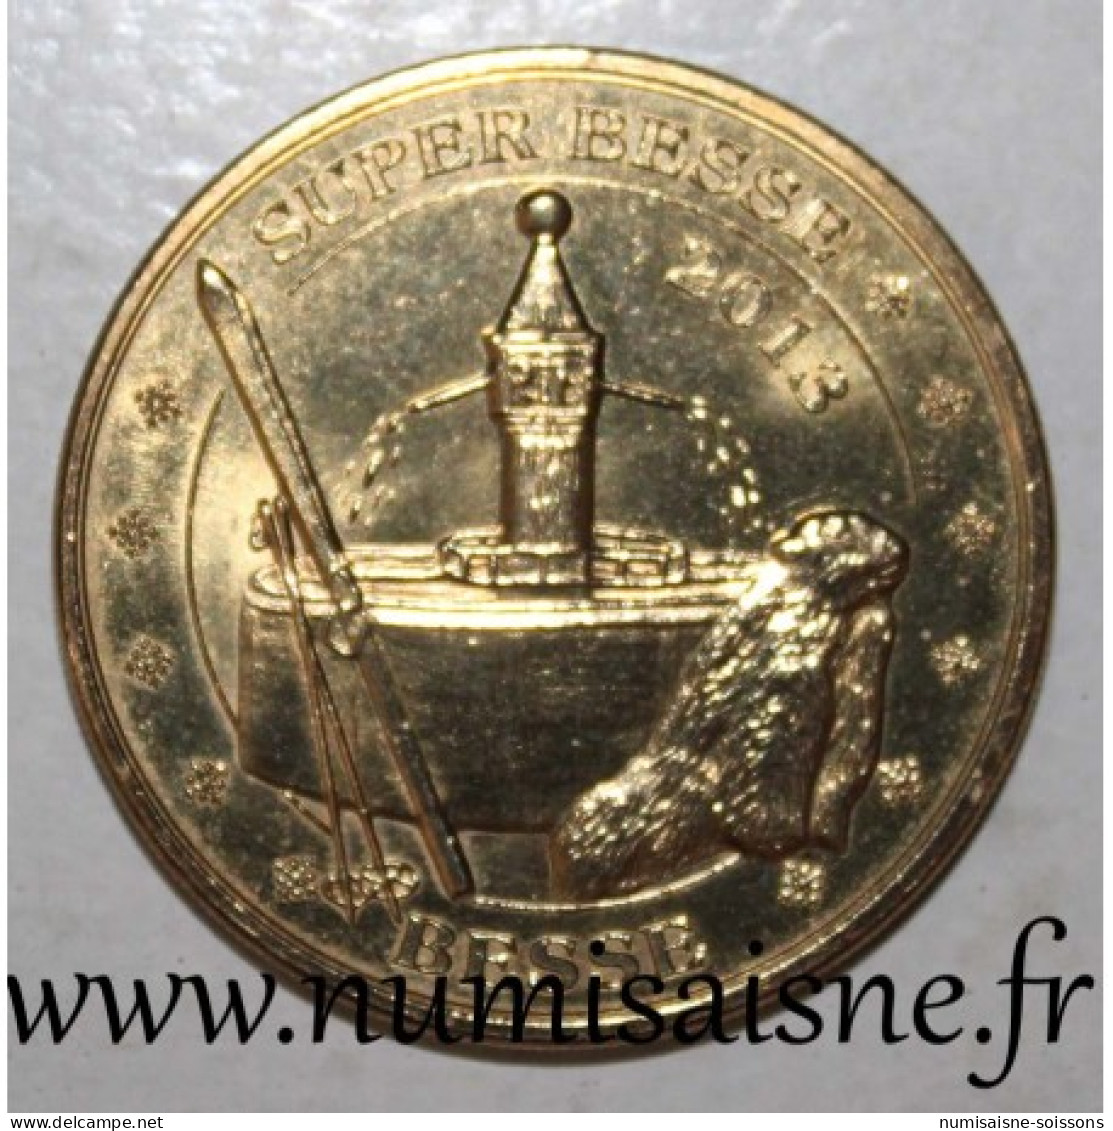 FRANCE - 63 - SUPER BESSE - BESSE - Marmotte - Monnaie De Paris - 2013 - 2013